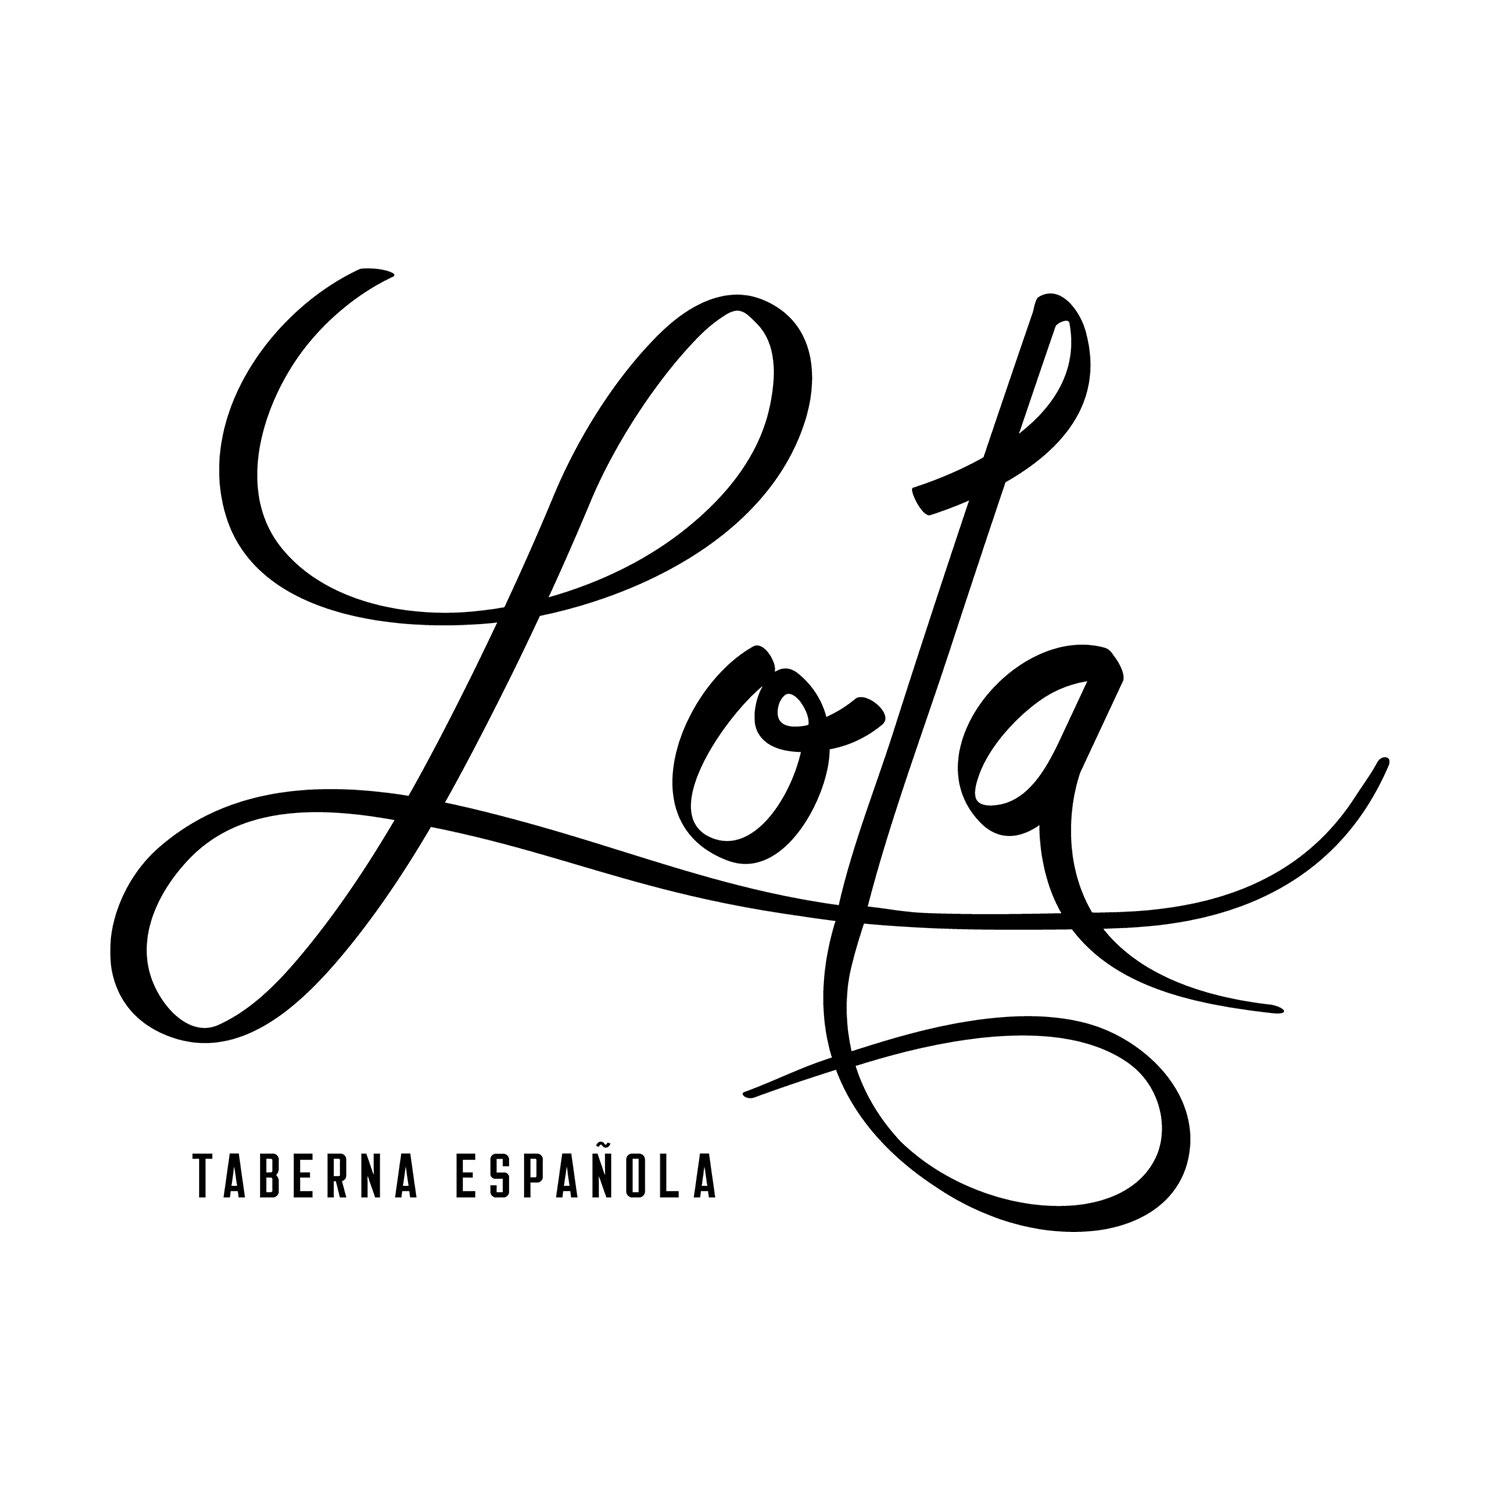 Lola Taberna Espanola